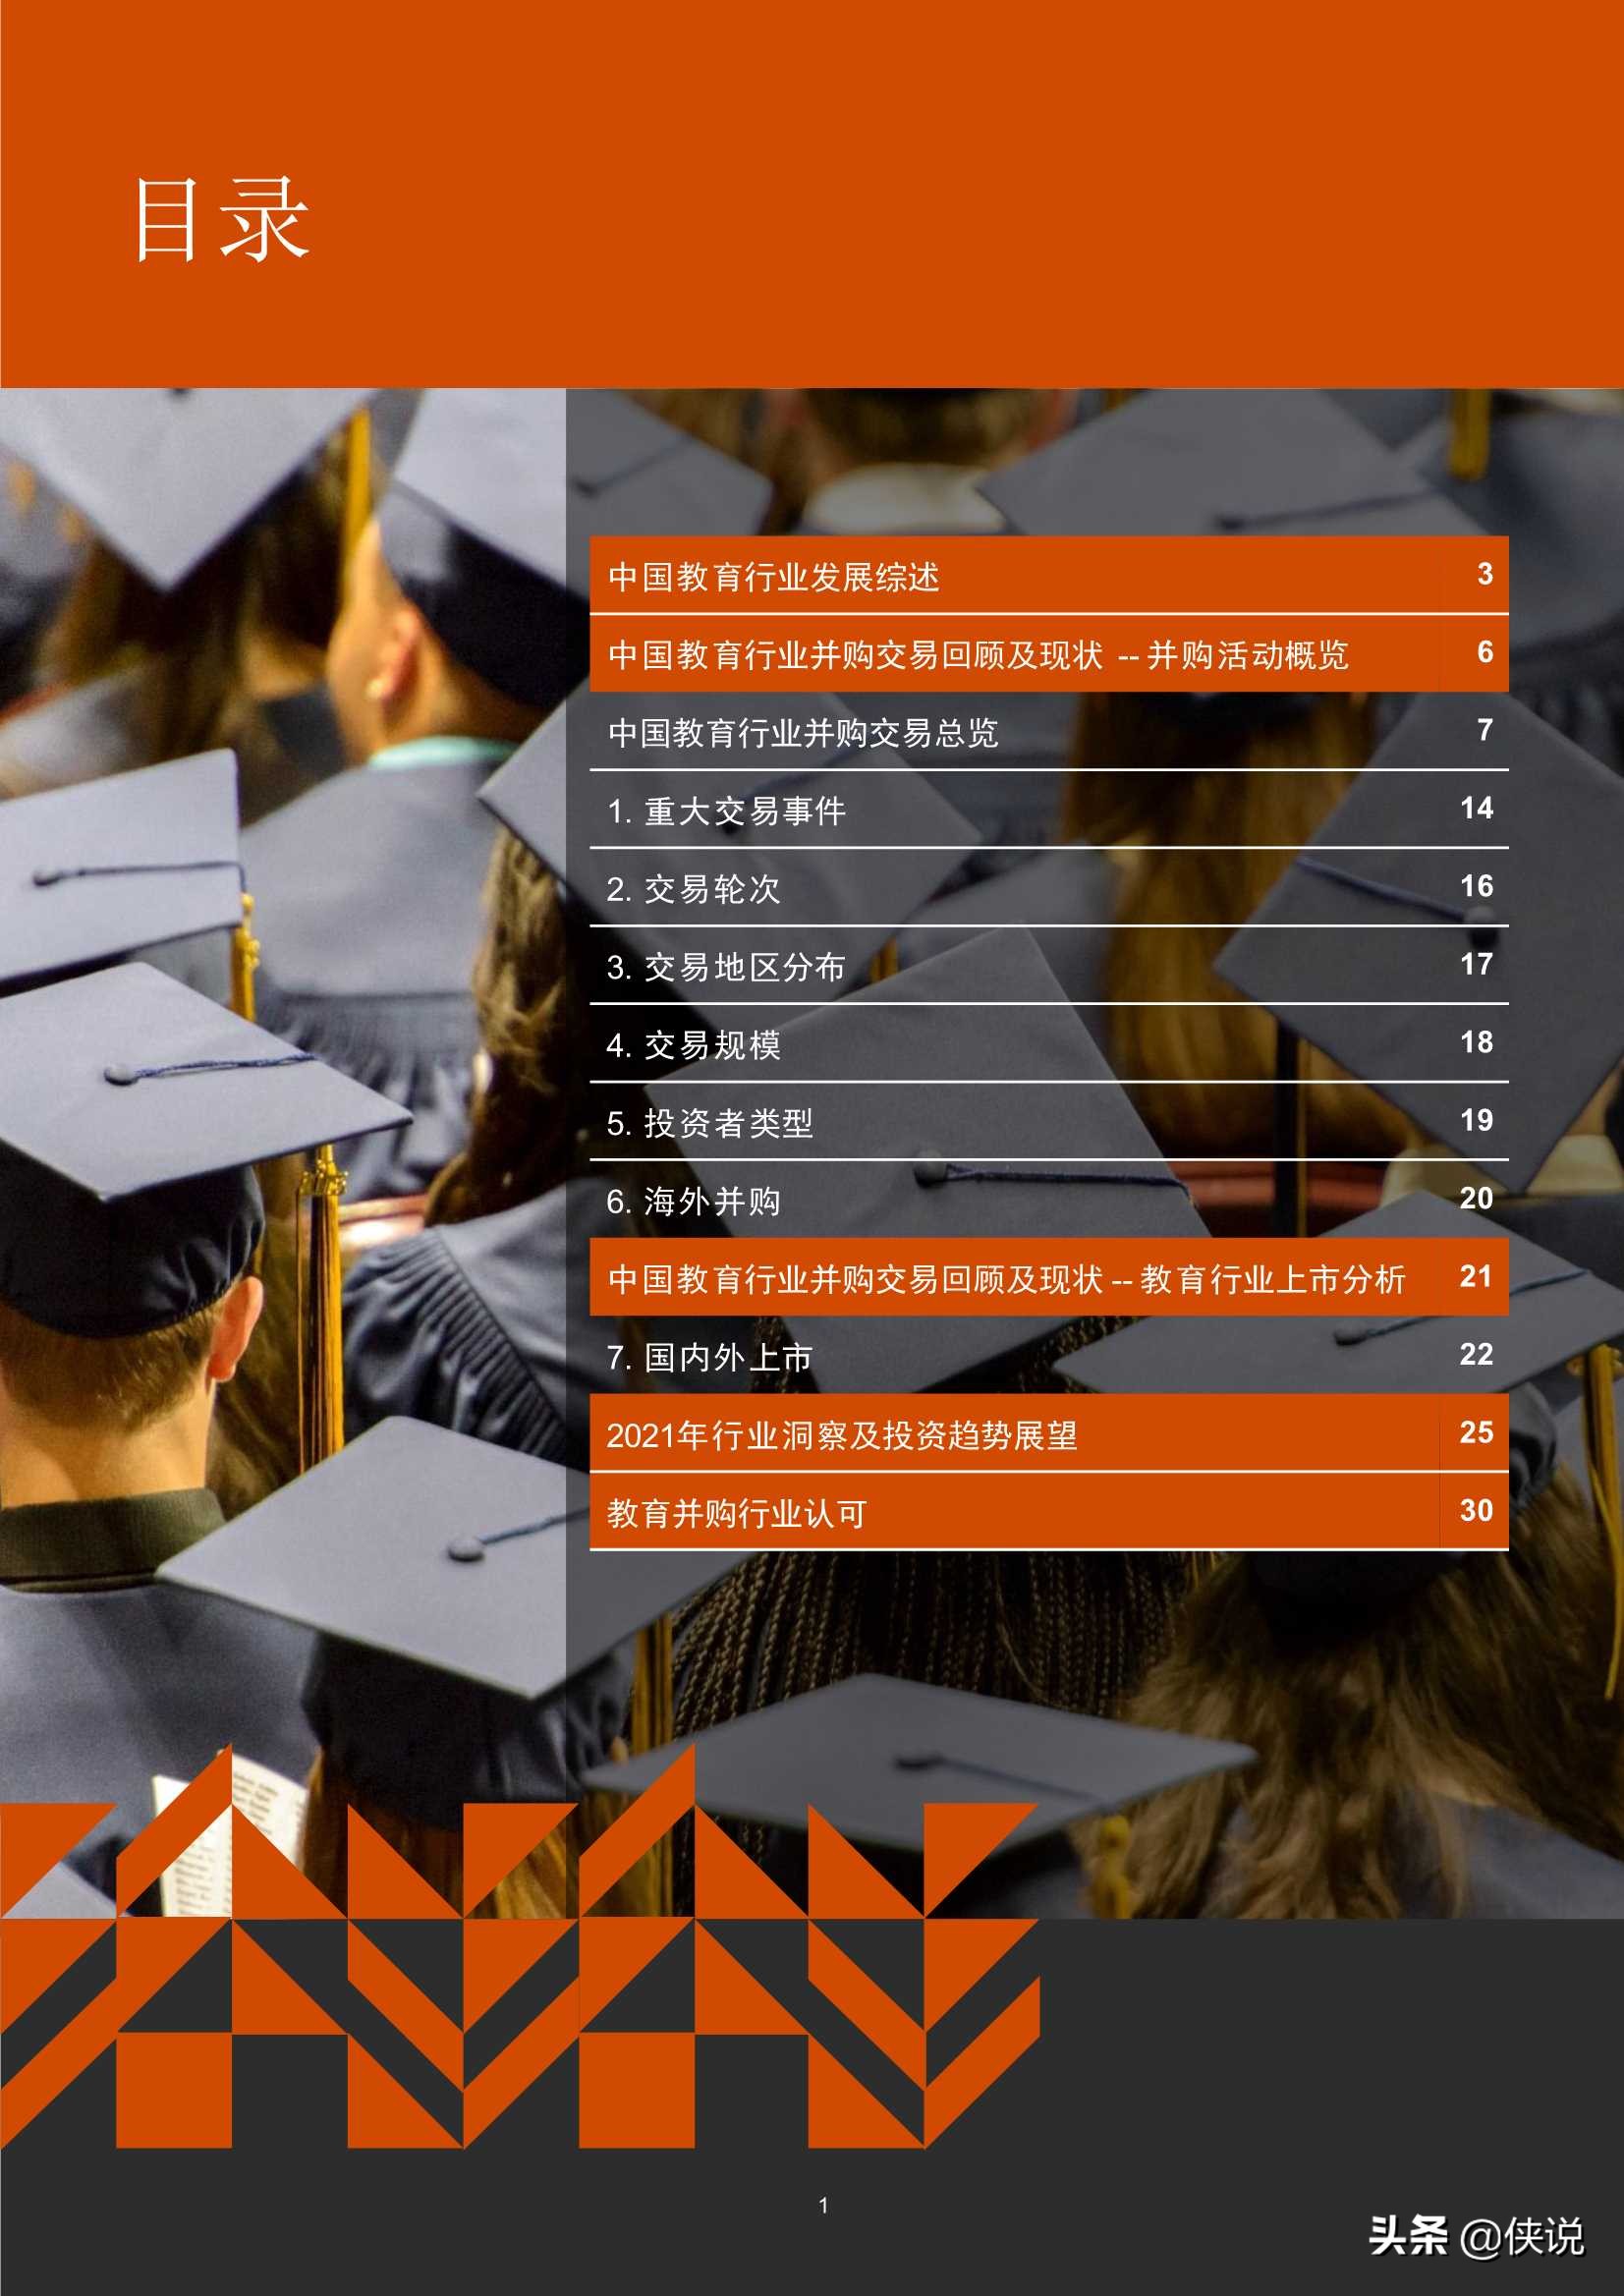 2016年-2020年中国教育行业并购活动回顾及趋势展望